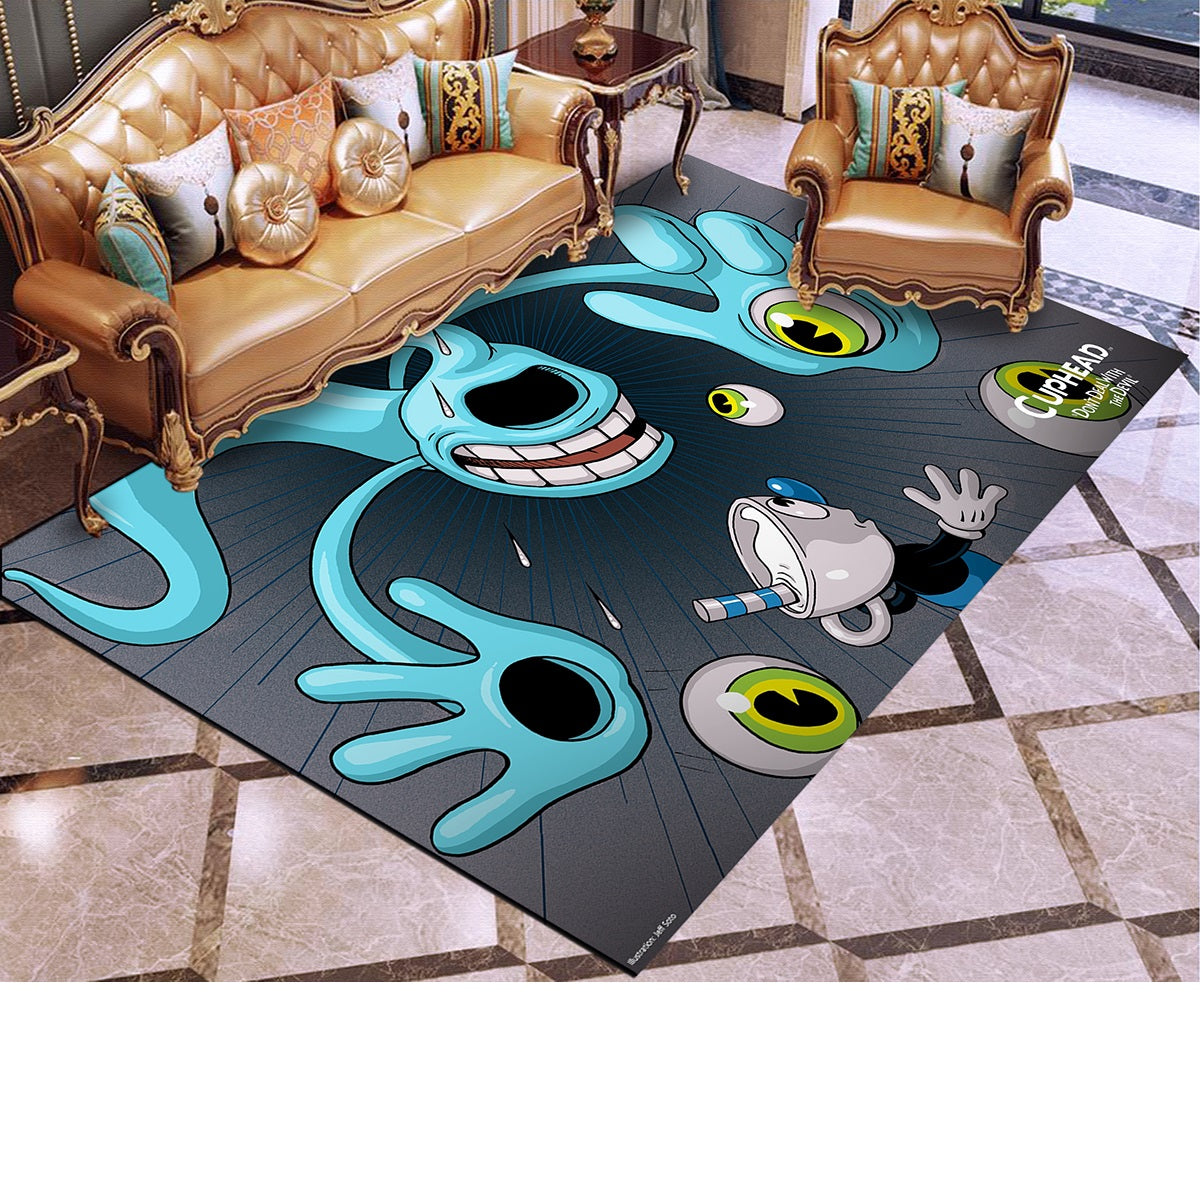 Cuphead #1 Graphic Carpet Living Room Bedroom Sofa Rug Door Mat Kitchen Bathroom Mats for Kids